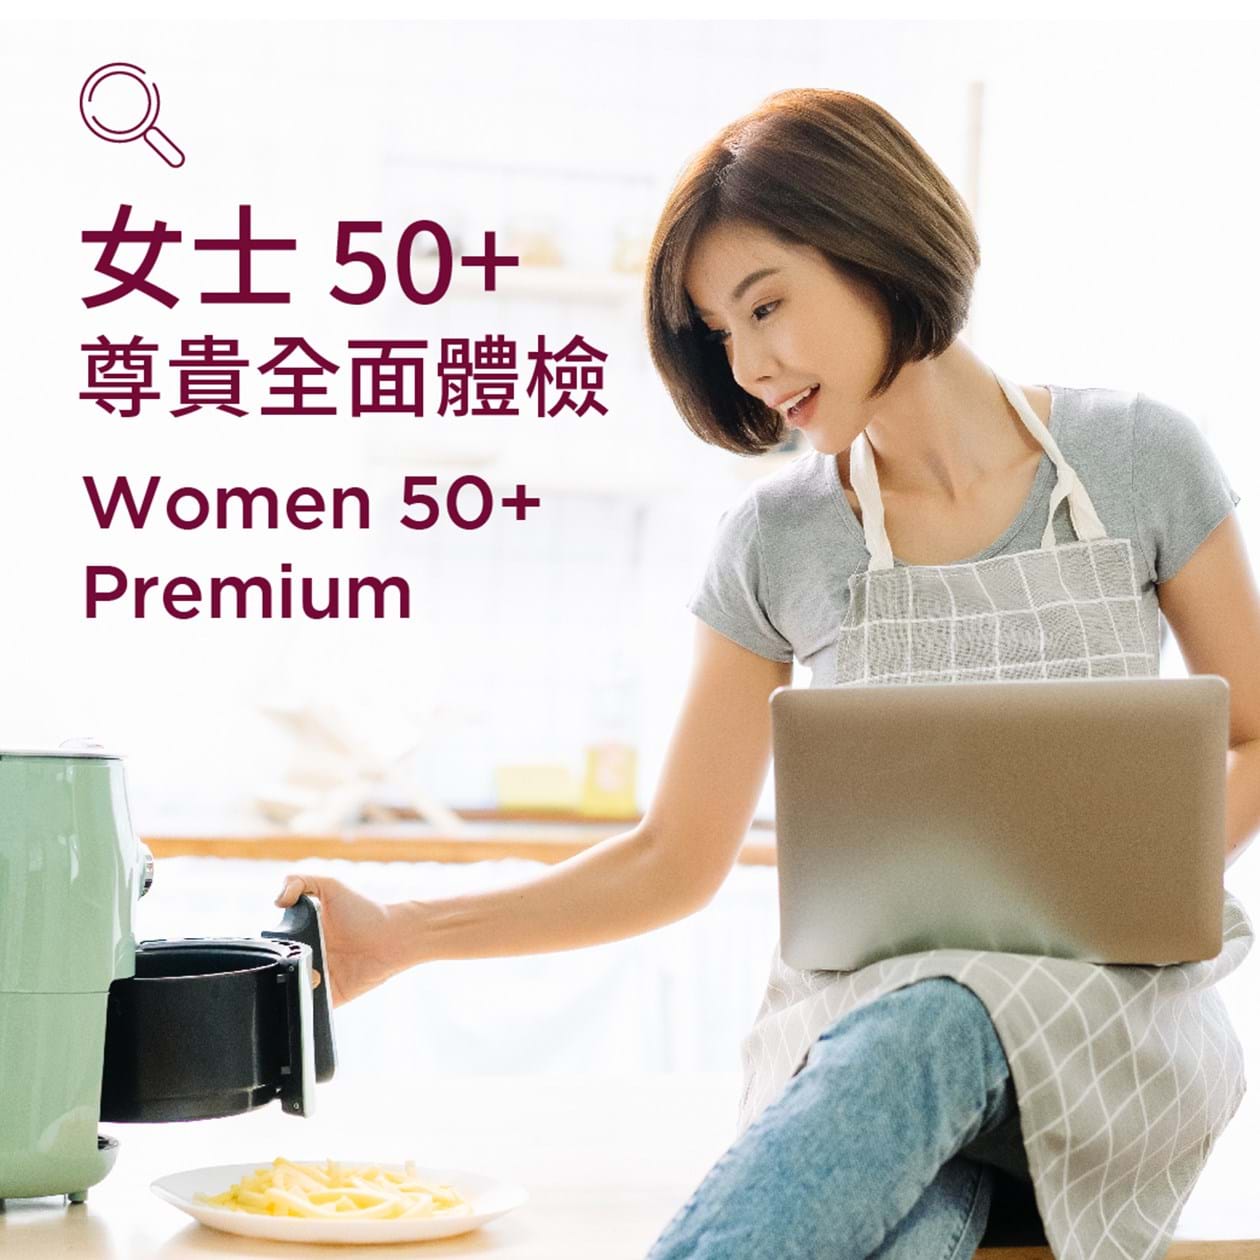 Women 50+ (Premium)